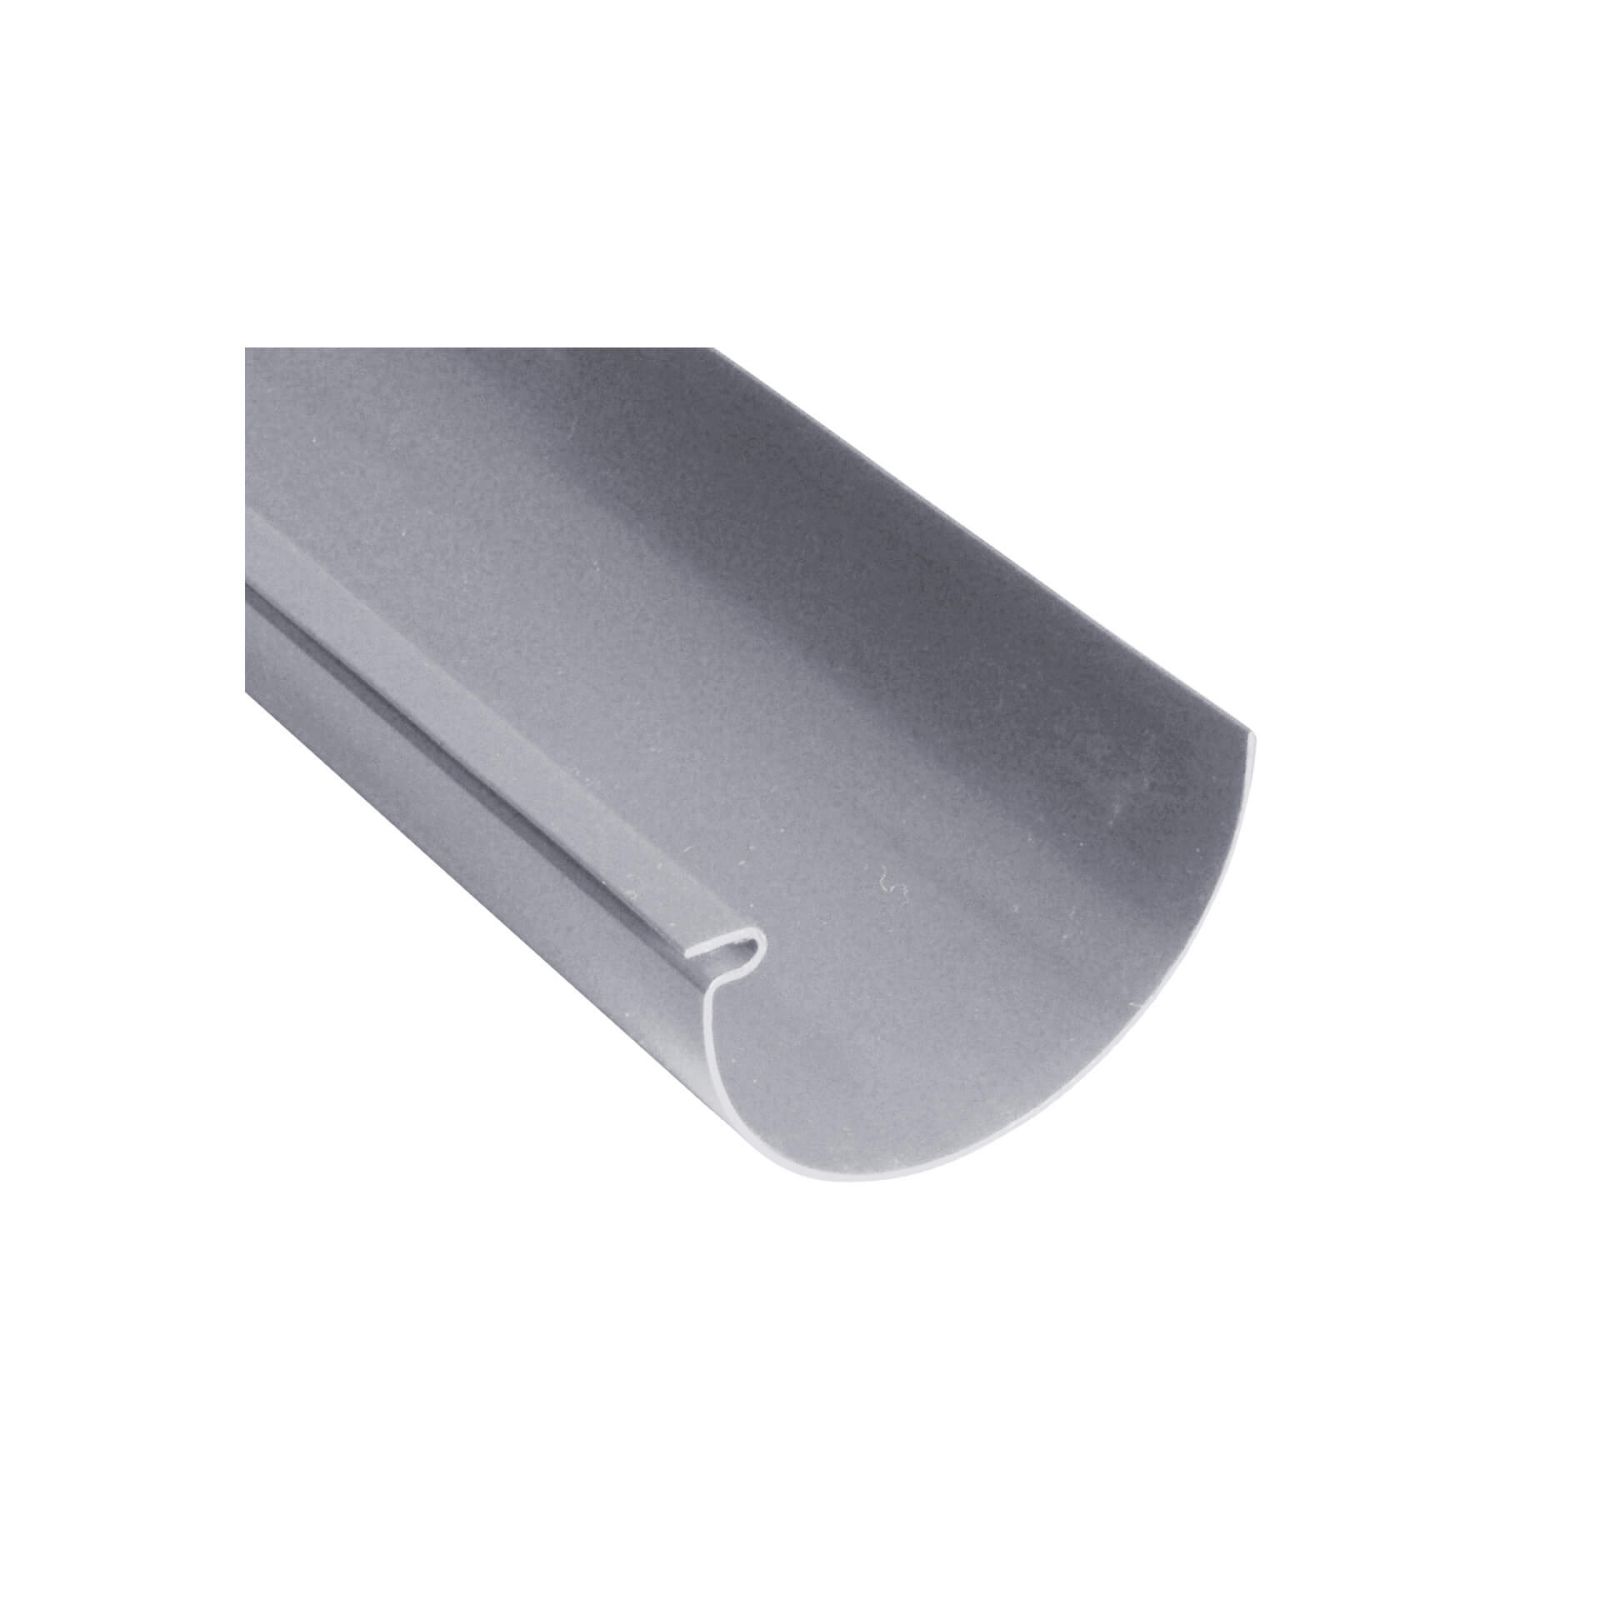 Kunststoff Dachrinnen Sparpaket 6 m | Ø 125/90 mm | Farbe Grau #1